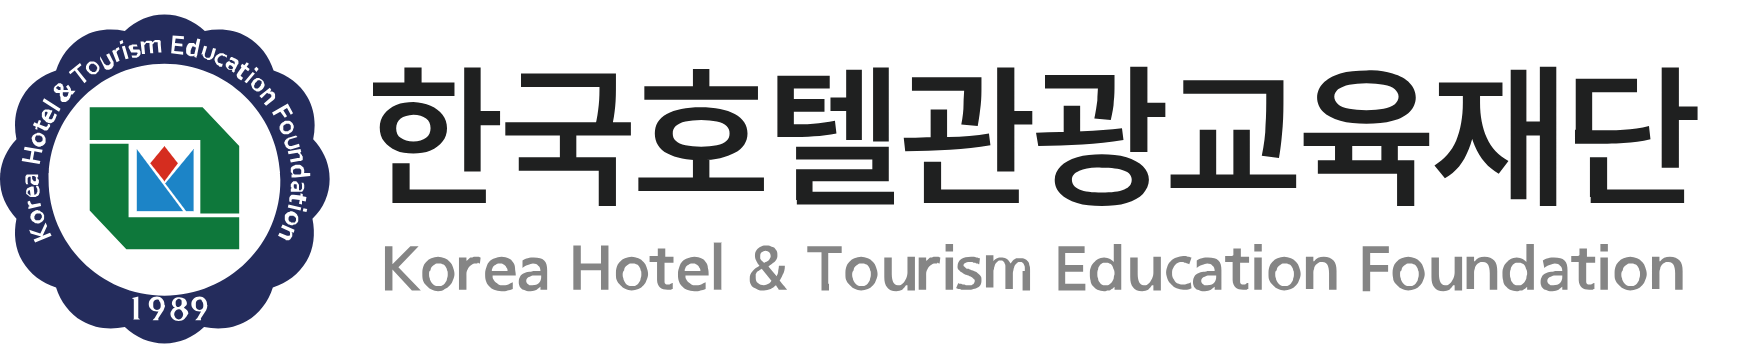 한국호텔관광교육재단.png